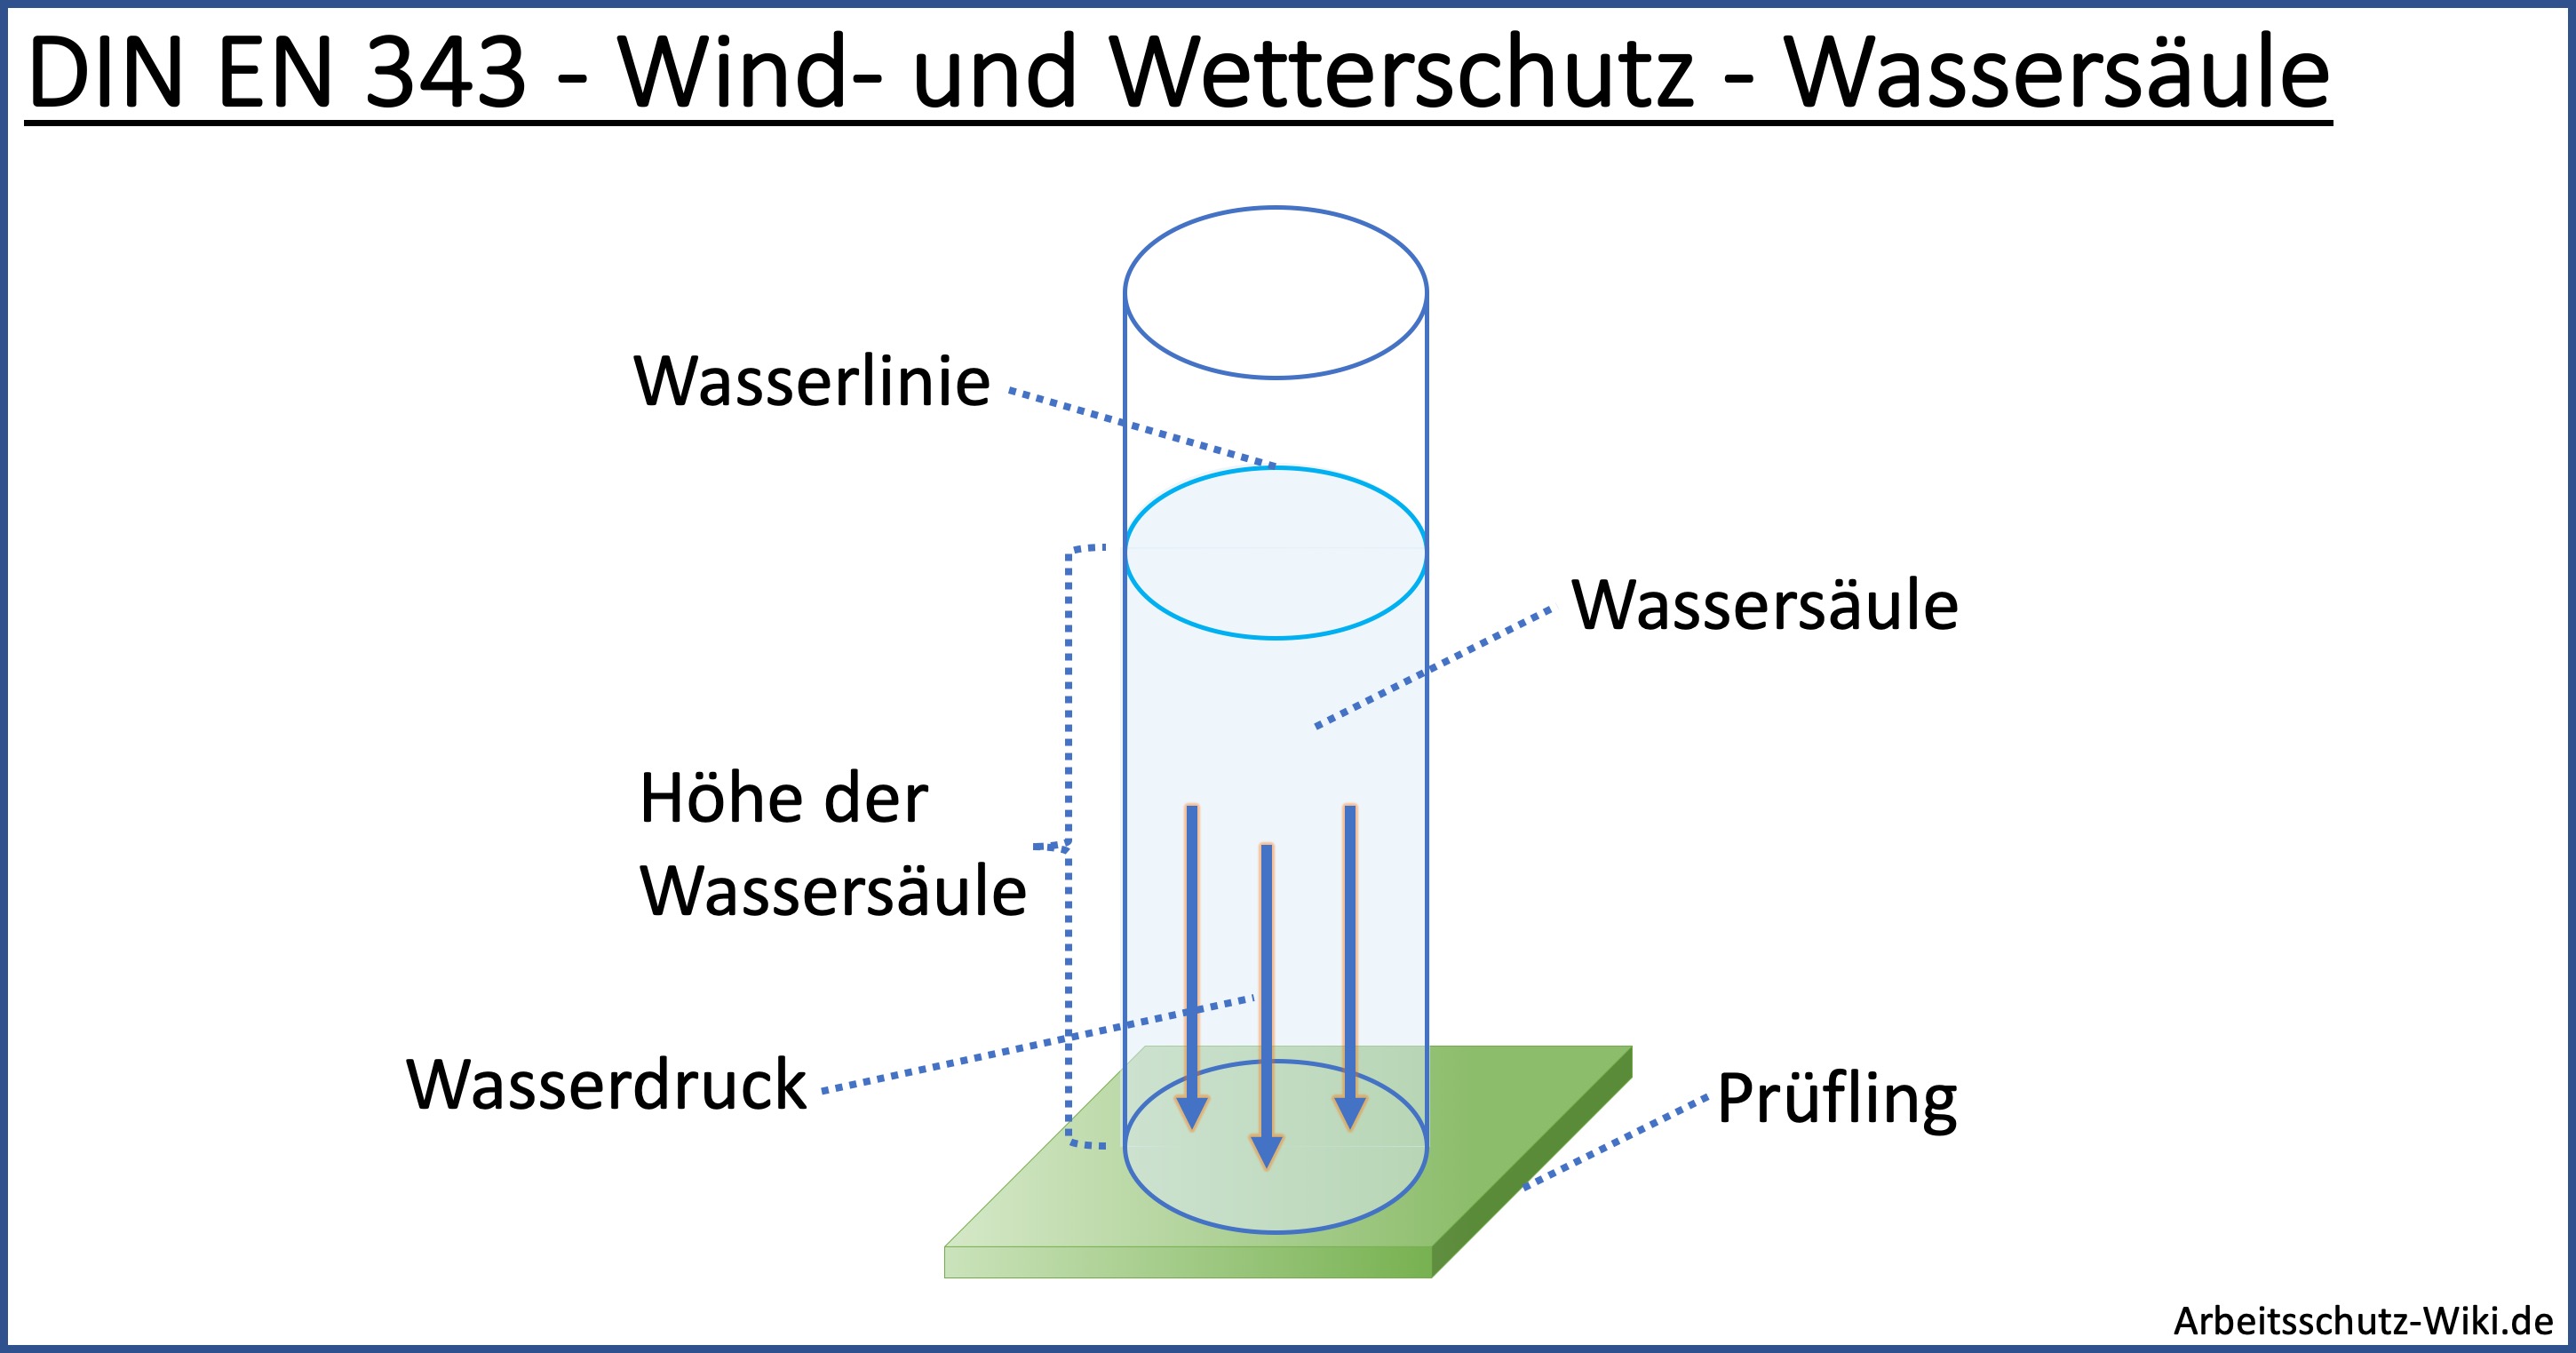 Die Grafik zeigt eine schematische Darstellung der Ermittlung der DIN EN 343 Wetterschutzklasse mittels Wassersäule. Auf dem Bild ist unten flach der Prüfling zu sehen. Darüber steht die Wassersäule, die einen entsprechenden Druck auf den Prüfling ausübt.